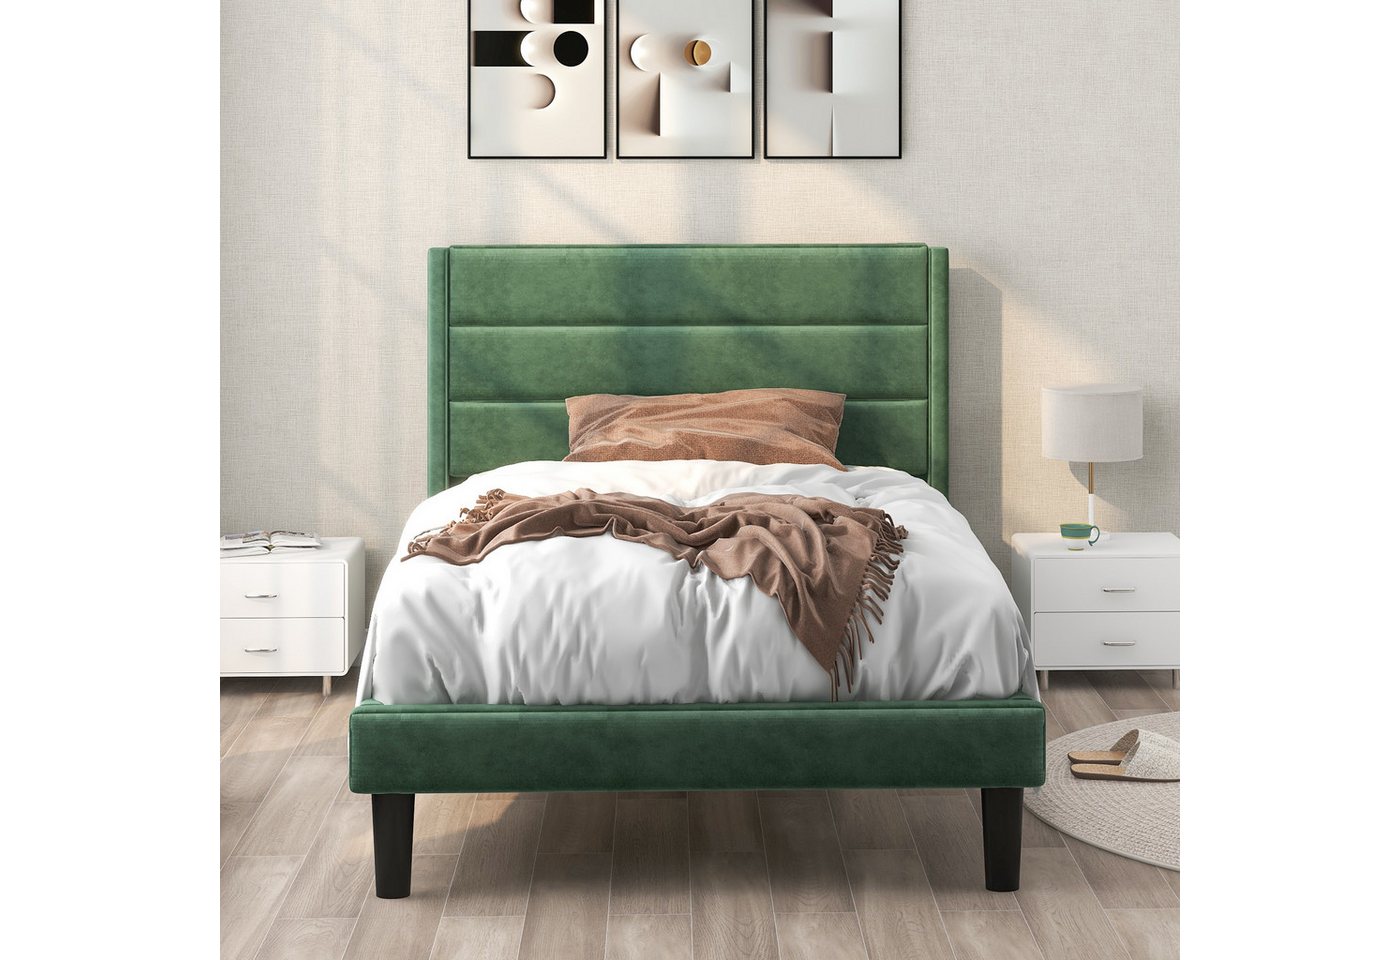 IDEASY Polsterbett Polsterbett, 140 * 200 cm / 90 * 200 cm, grüner Samt / (Lieferung ohne Dekoration), graue Baumwolle und Leinen, zentrale Stütze, Stauraum unter dem Bett von IDEASY